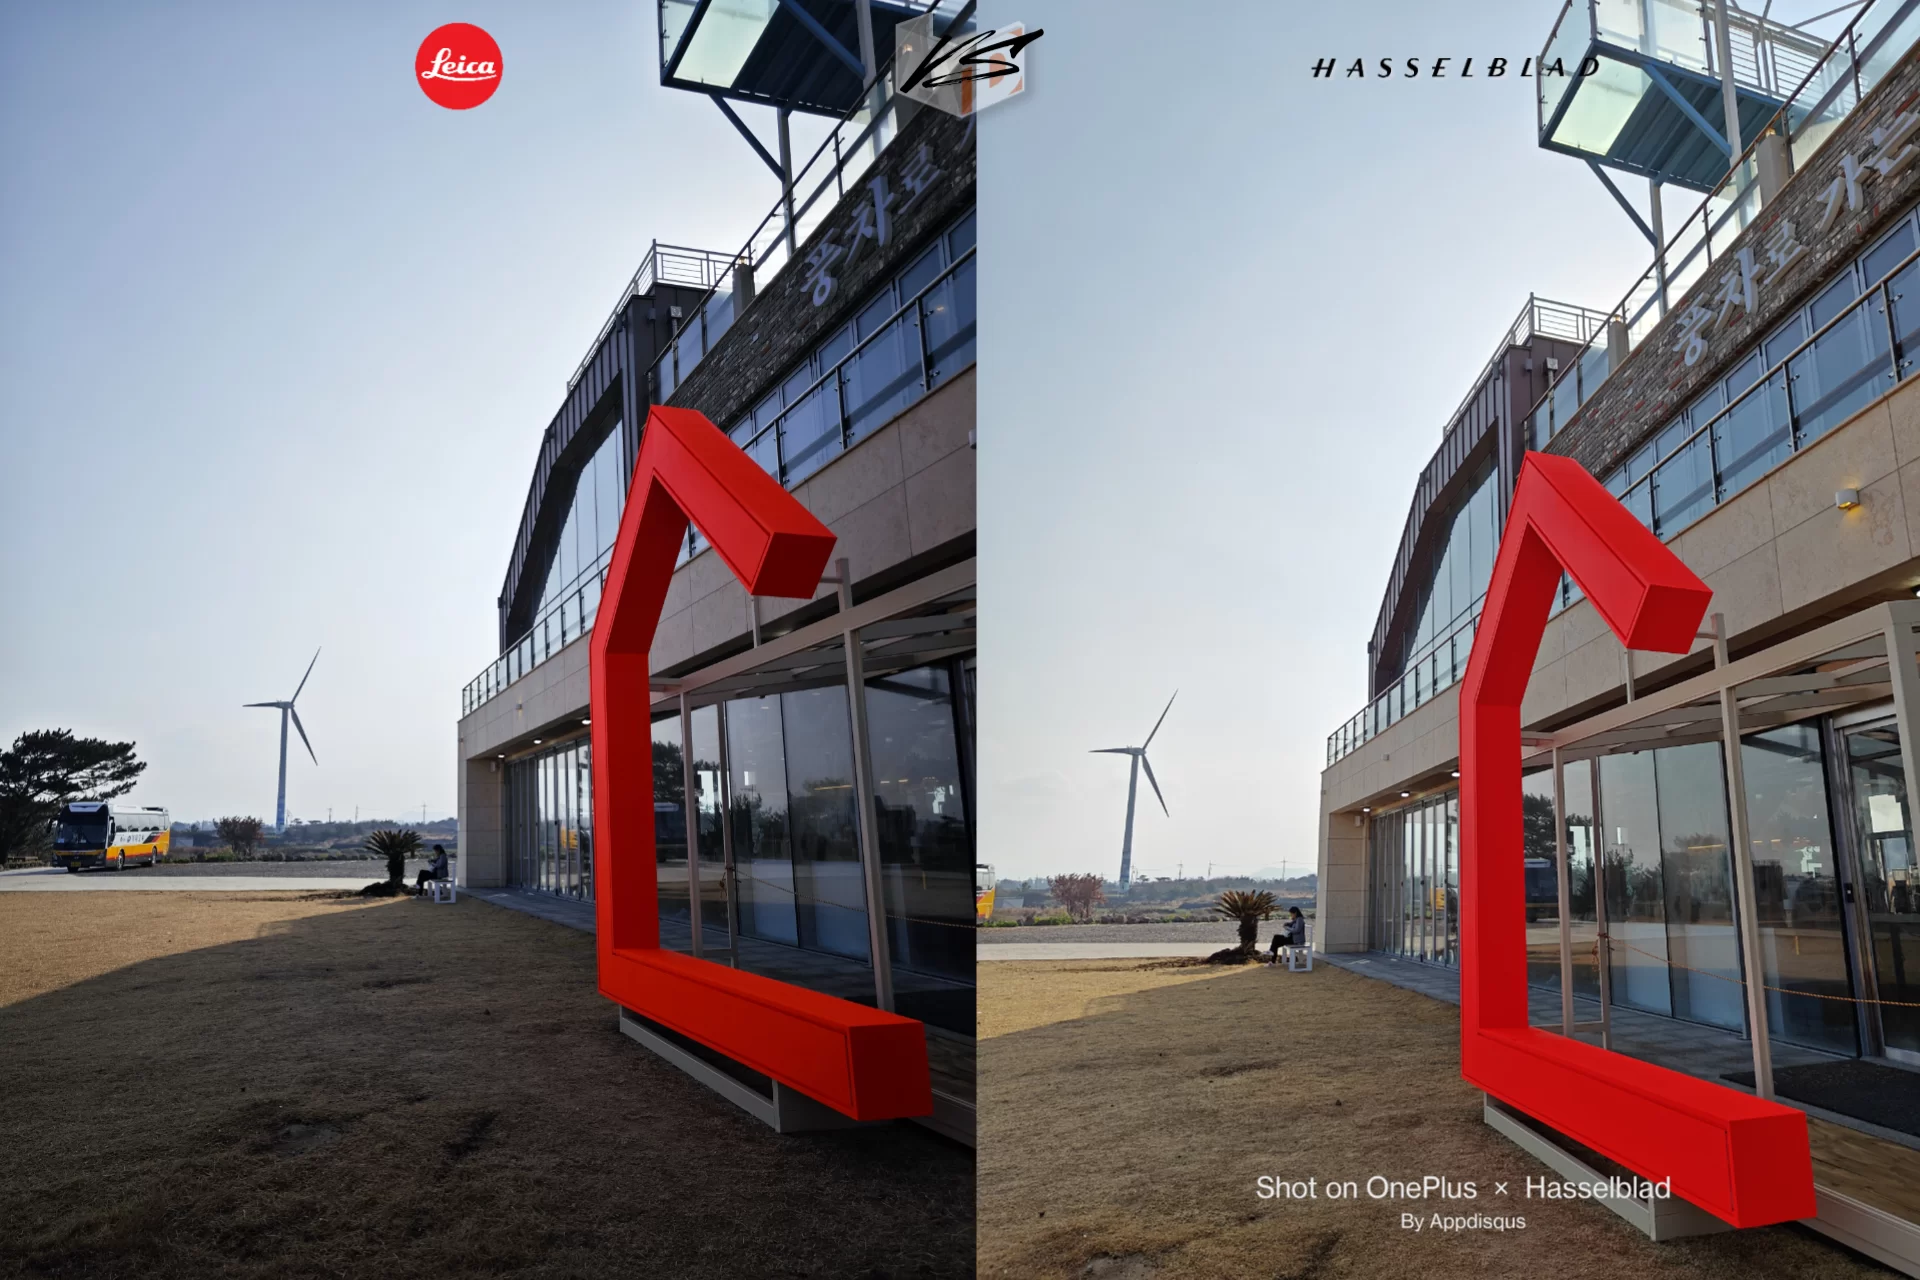 project 20230310 0121530 17 | Hasselblad | เทียบกล้อง 2 เรือธง - Xiaomi 13 Pro ที่มาพร้อม Leica | OnePlus 11 ตัวแทนแห่ง Hasselblad